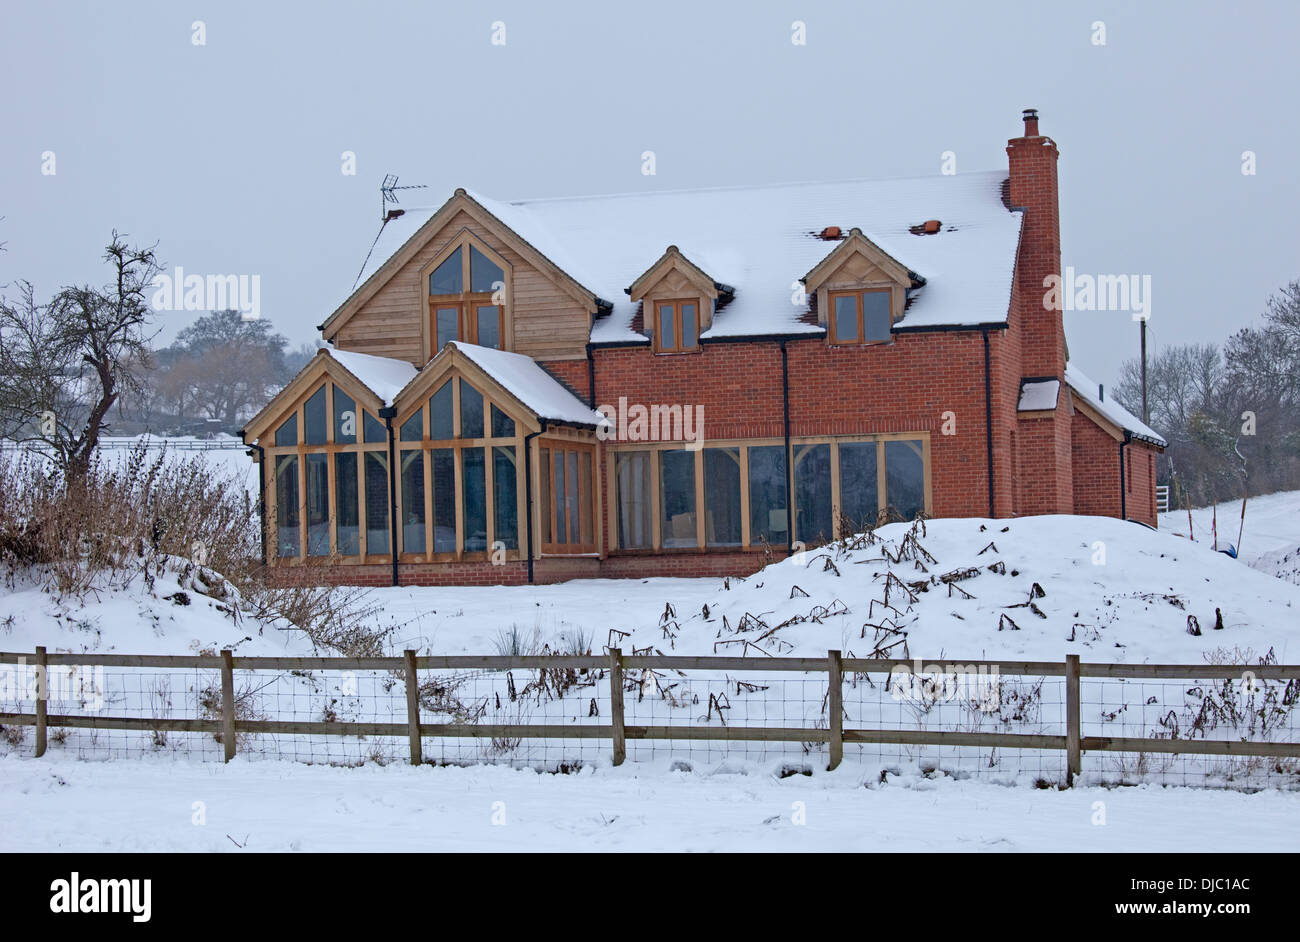 Nouveau châssis bois traditionnelle eco house dans la neige en Jan 2013 Mickleton UK Banque D'Images